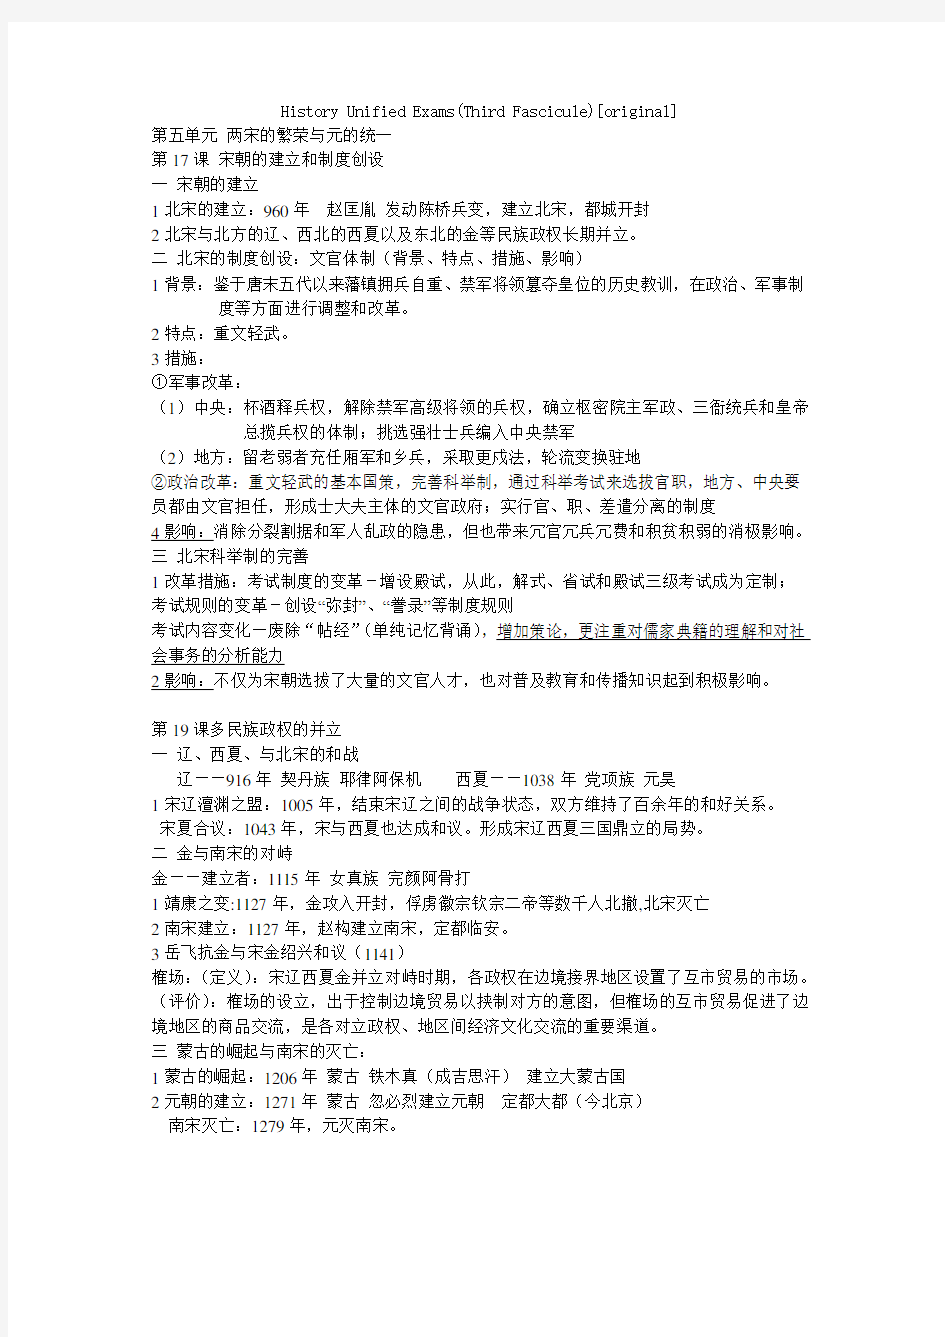 上海高中历史第三分册整理